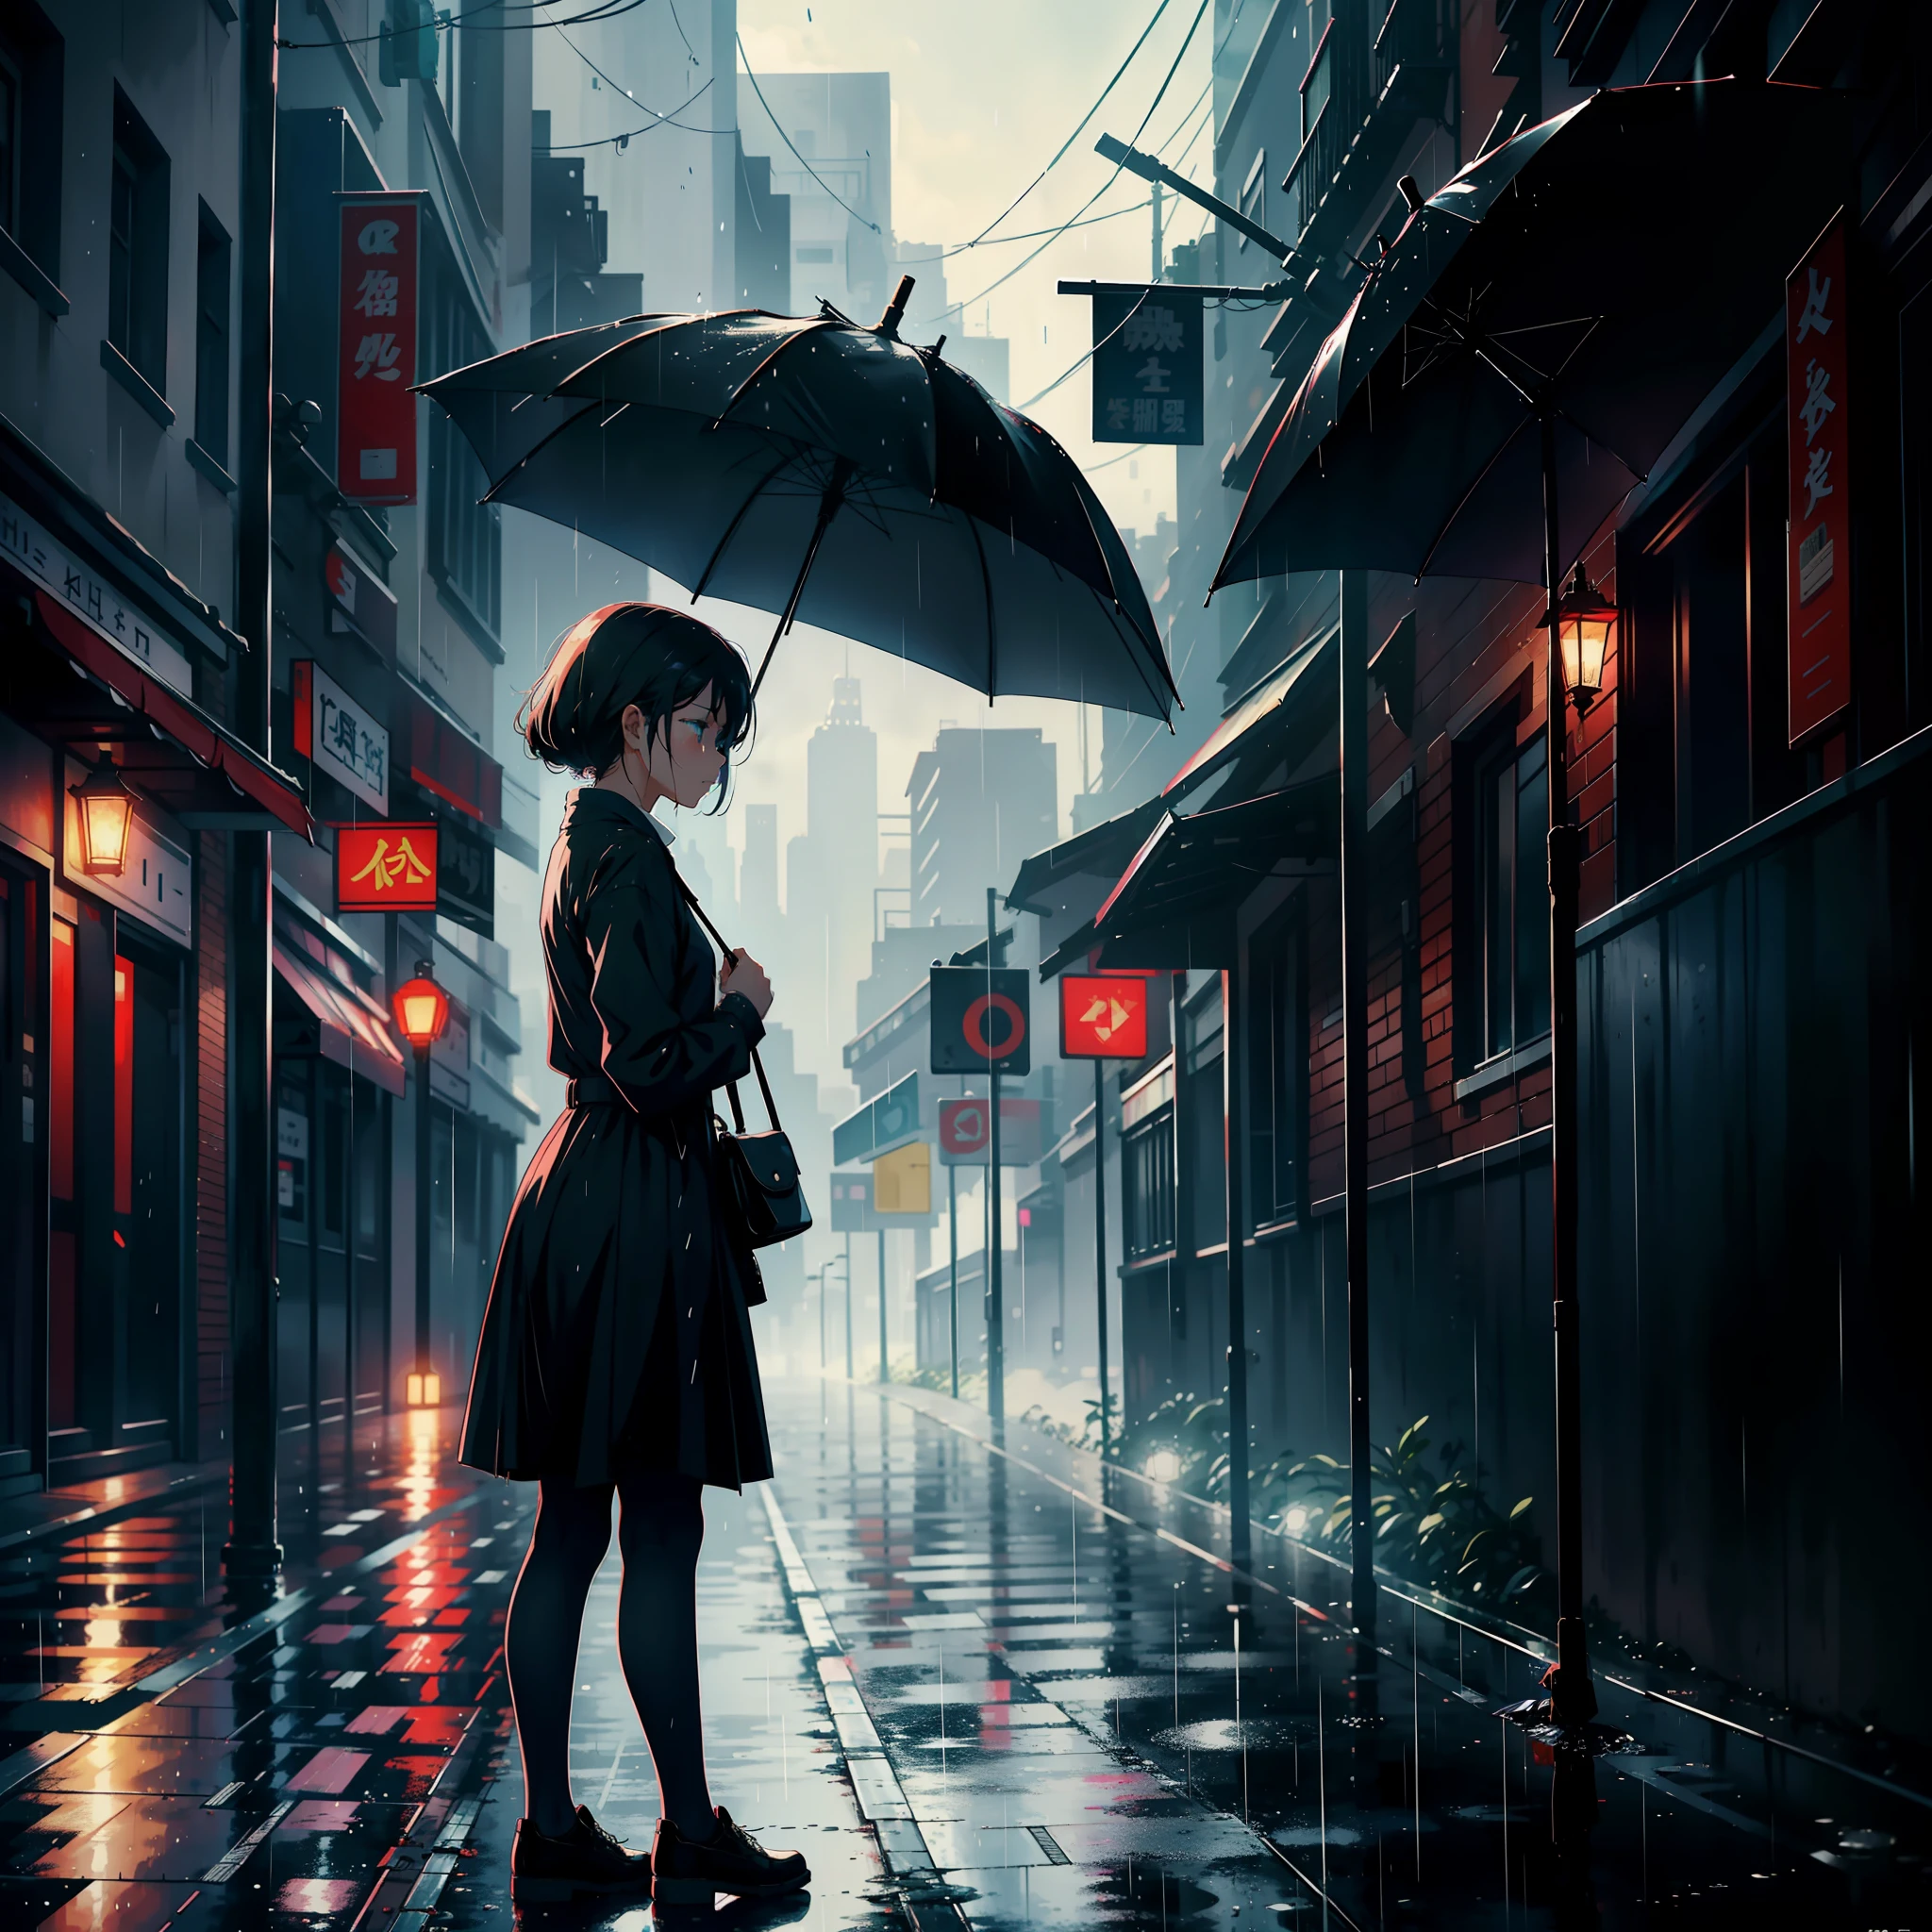 Ein Mädchen mit einem Regenschirm stand am Straßenrand, Weinen, sieht traurig aus und regnet